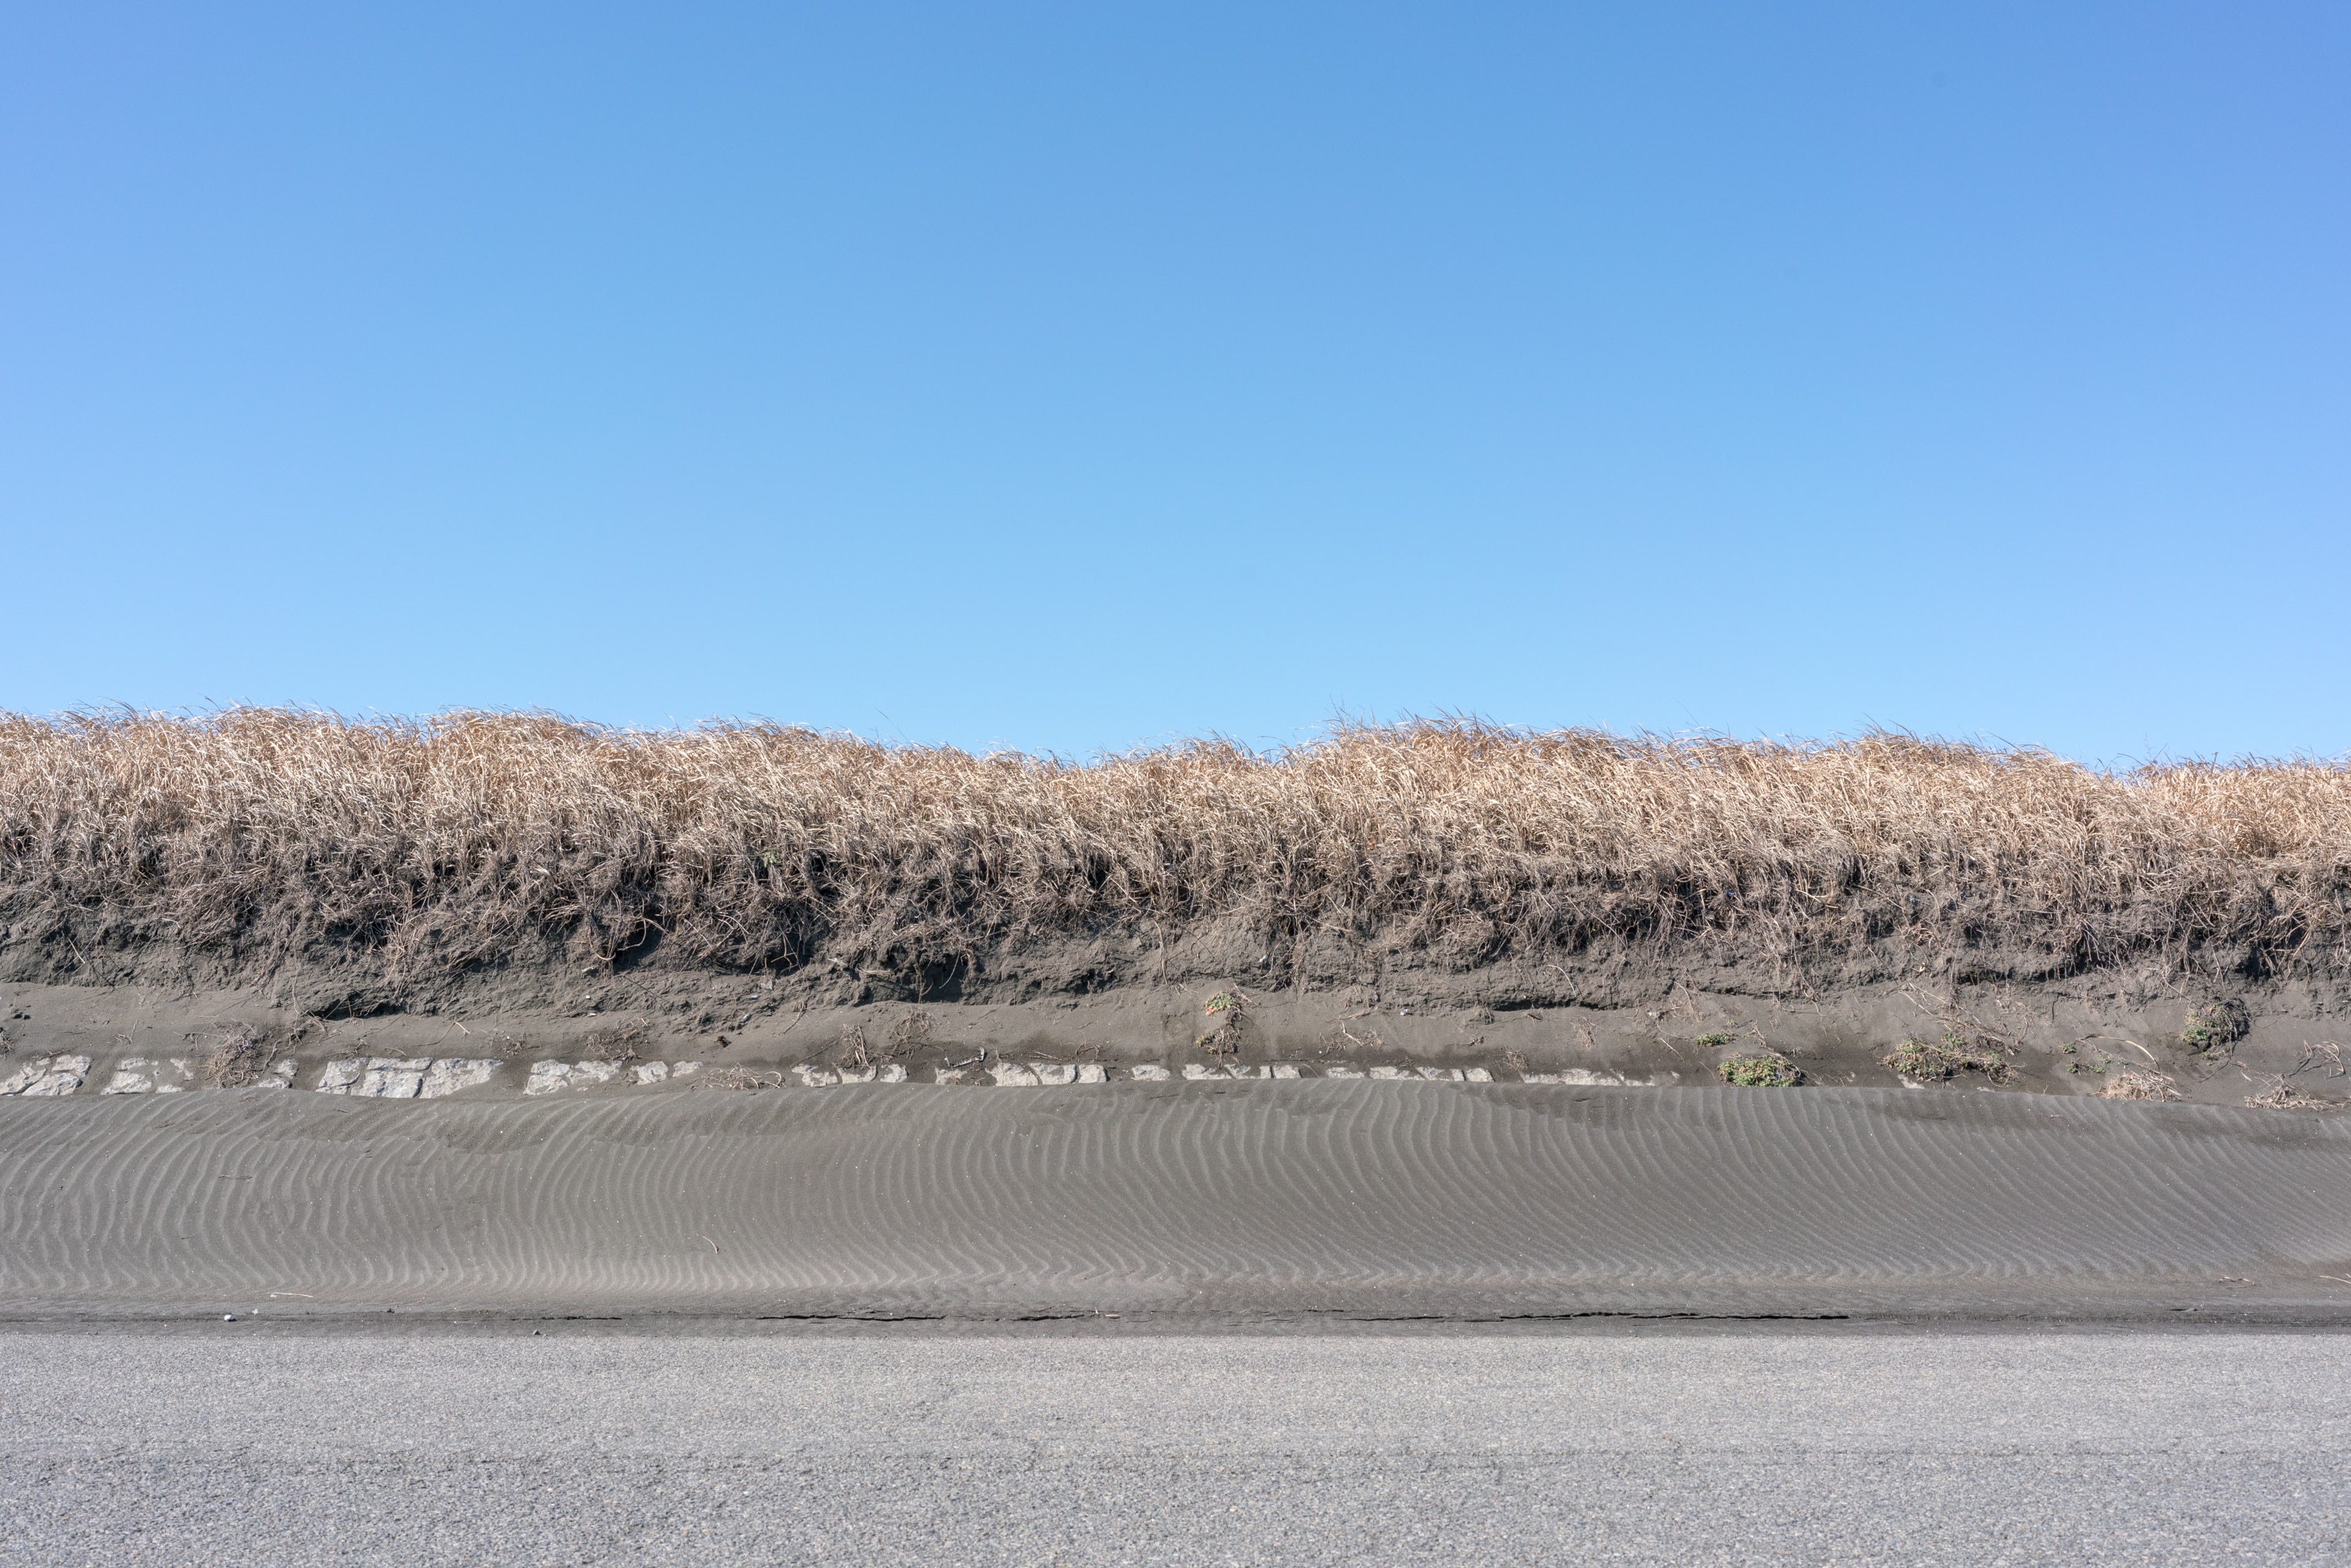 2023.02 - Ichinomiya Beach, Ichinomiya, Chiba